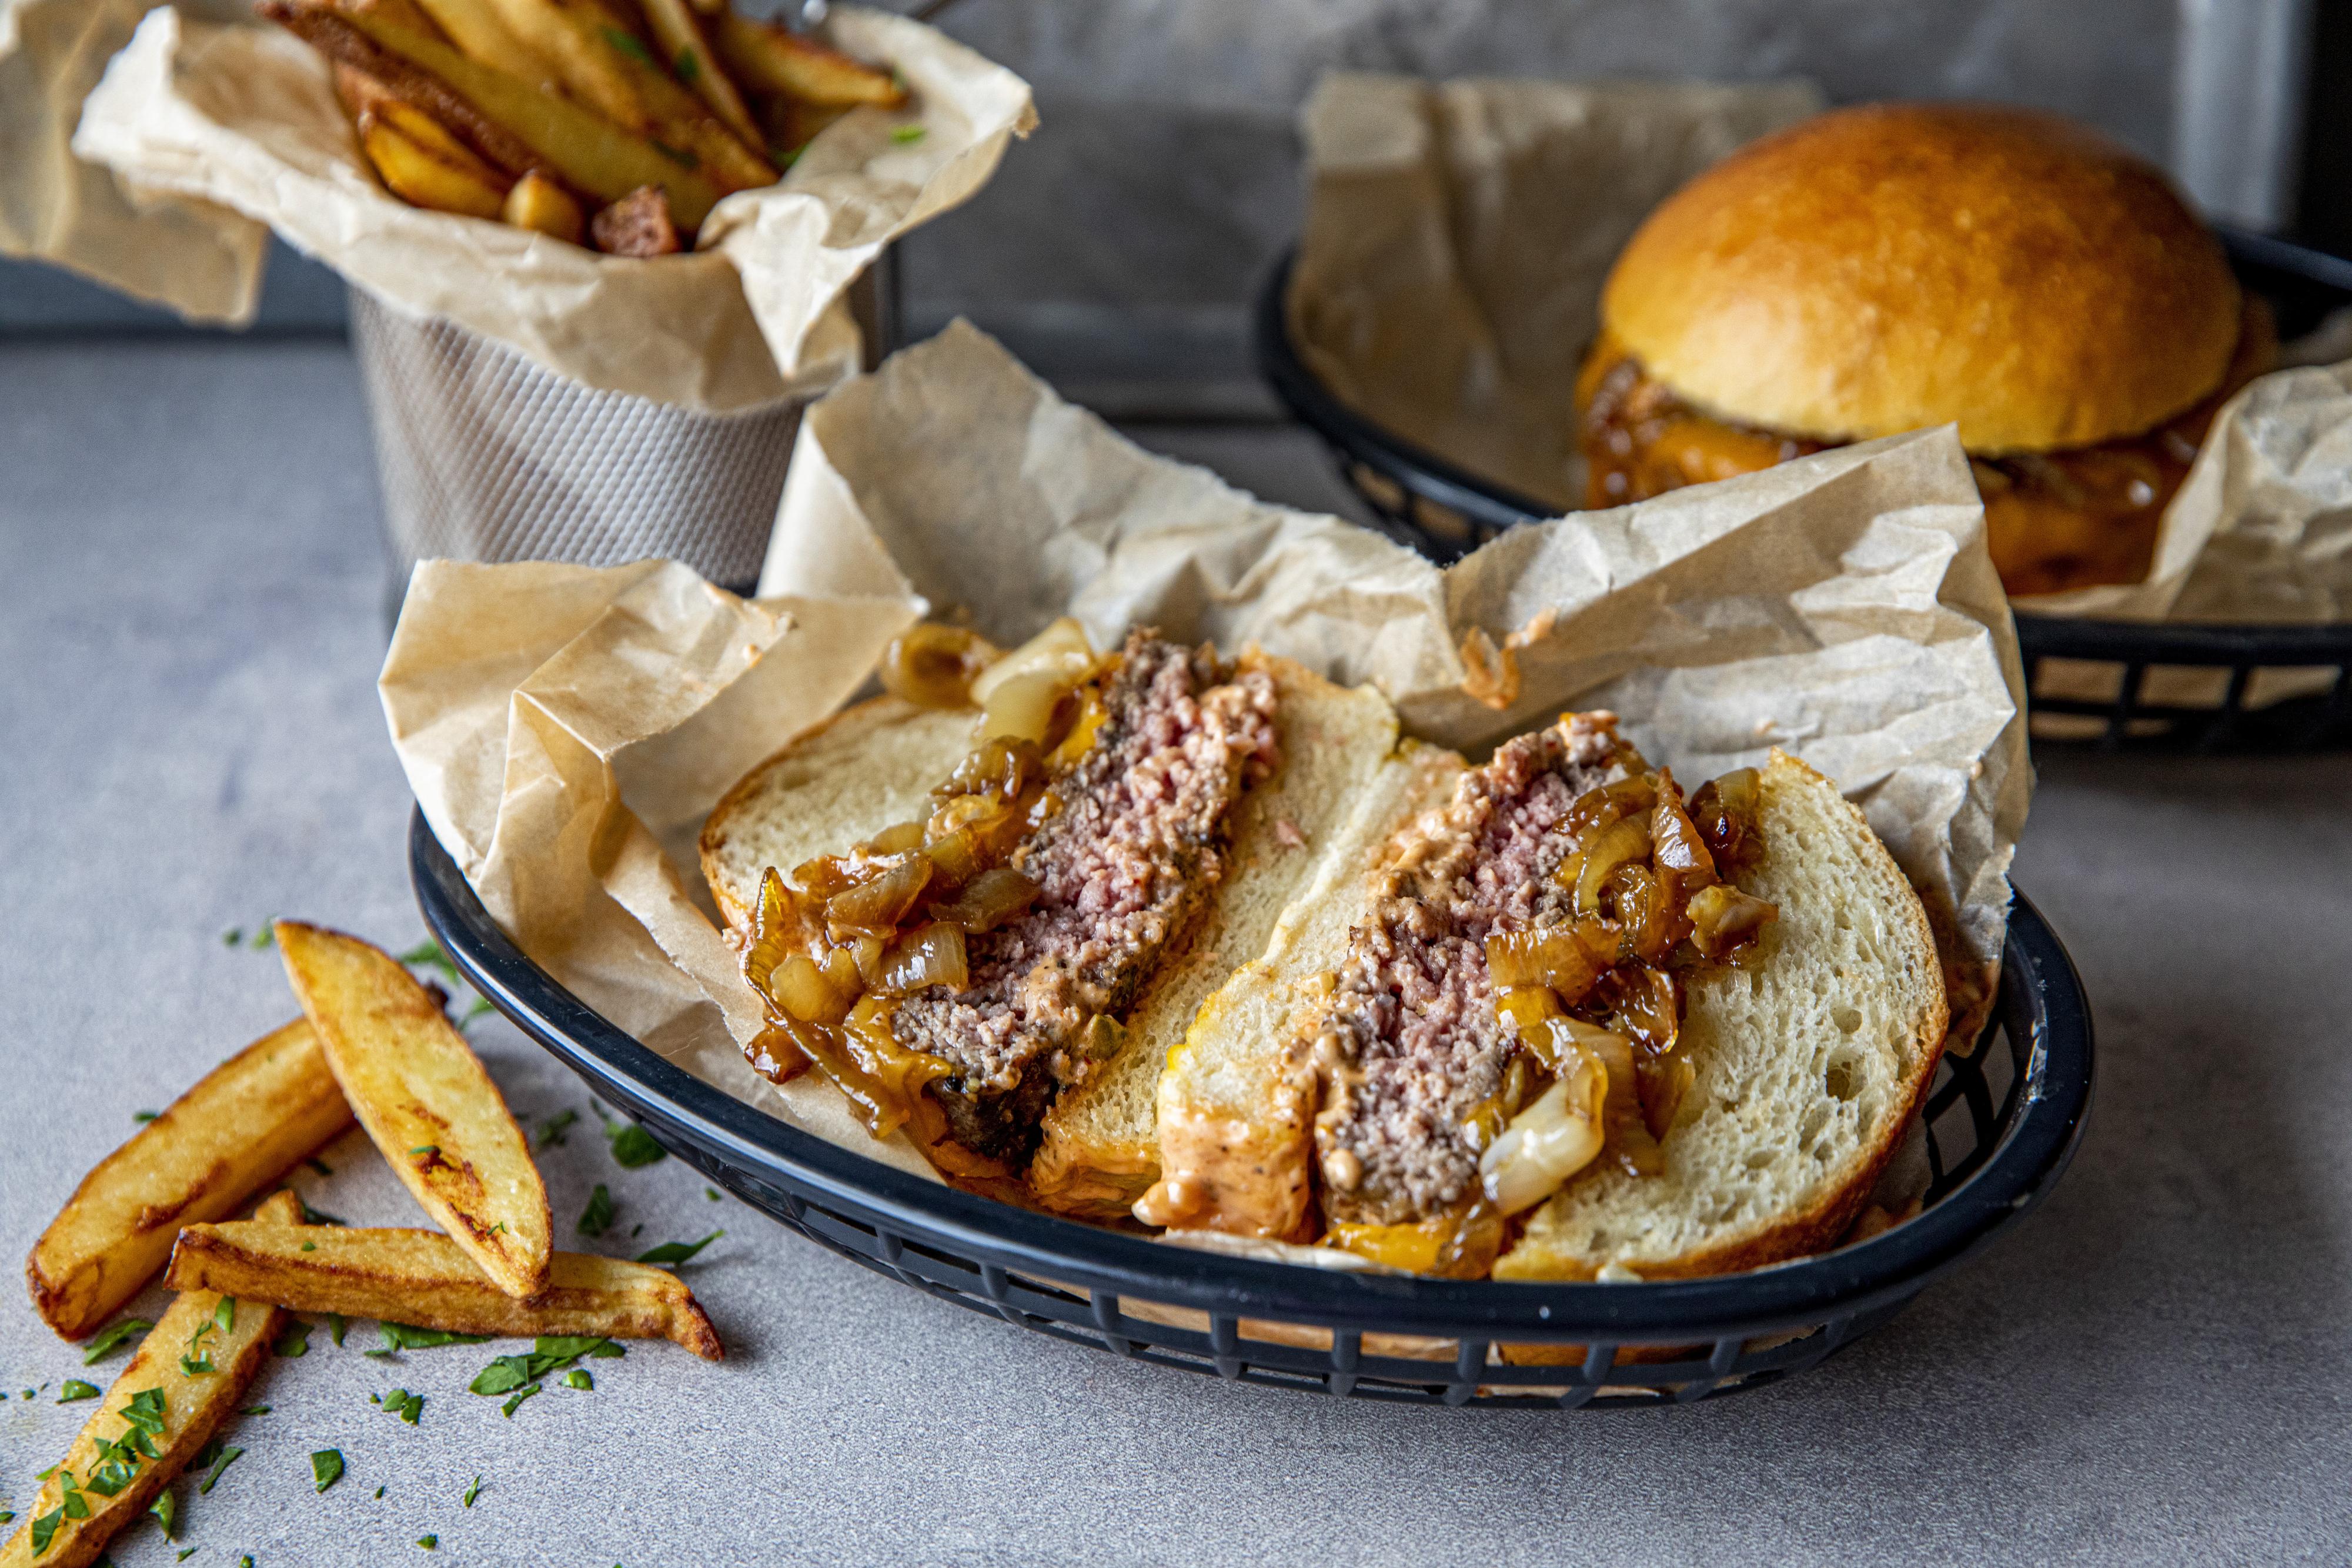 Varm brødene og legg på dressing, burger med ost, karamellisert løk og mer dressing. Serveres med fries.